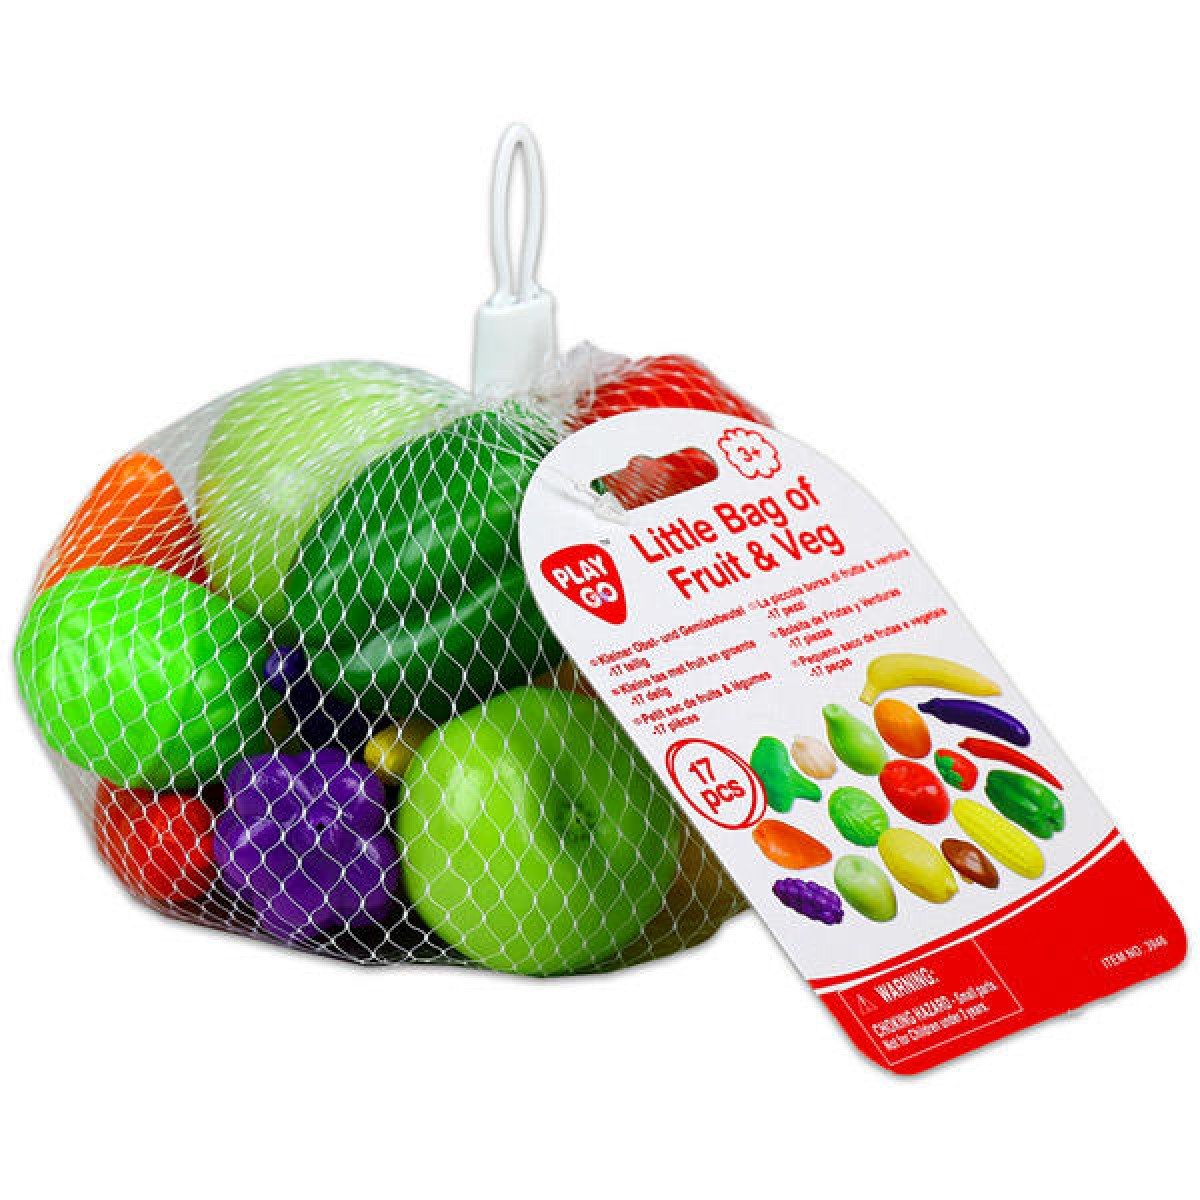 ผักผลไม้ถุงตาข่าย Little Bag of Fruit & Veg (รุ่น 3946) ยี่ห้อ PLAYGO